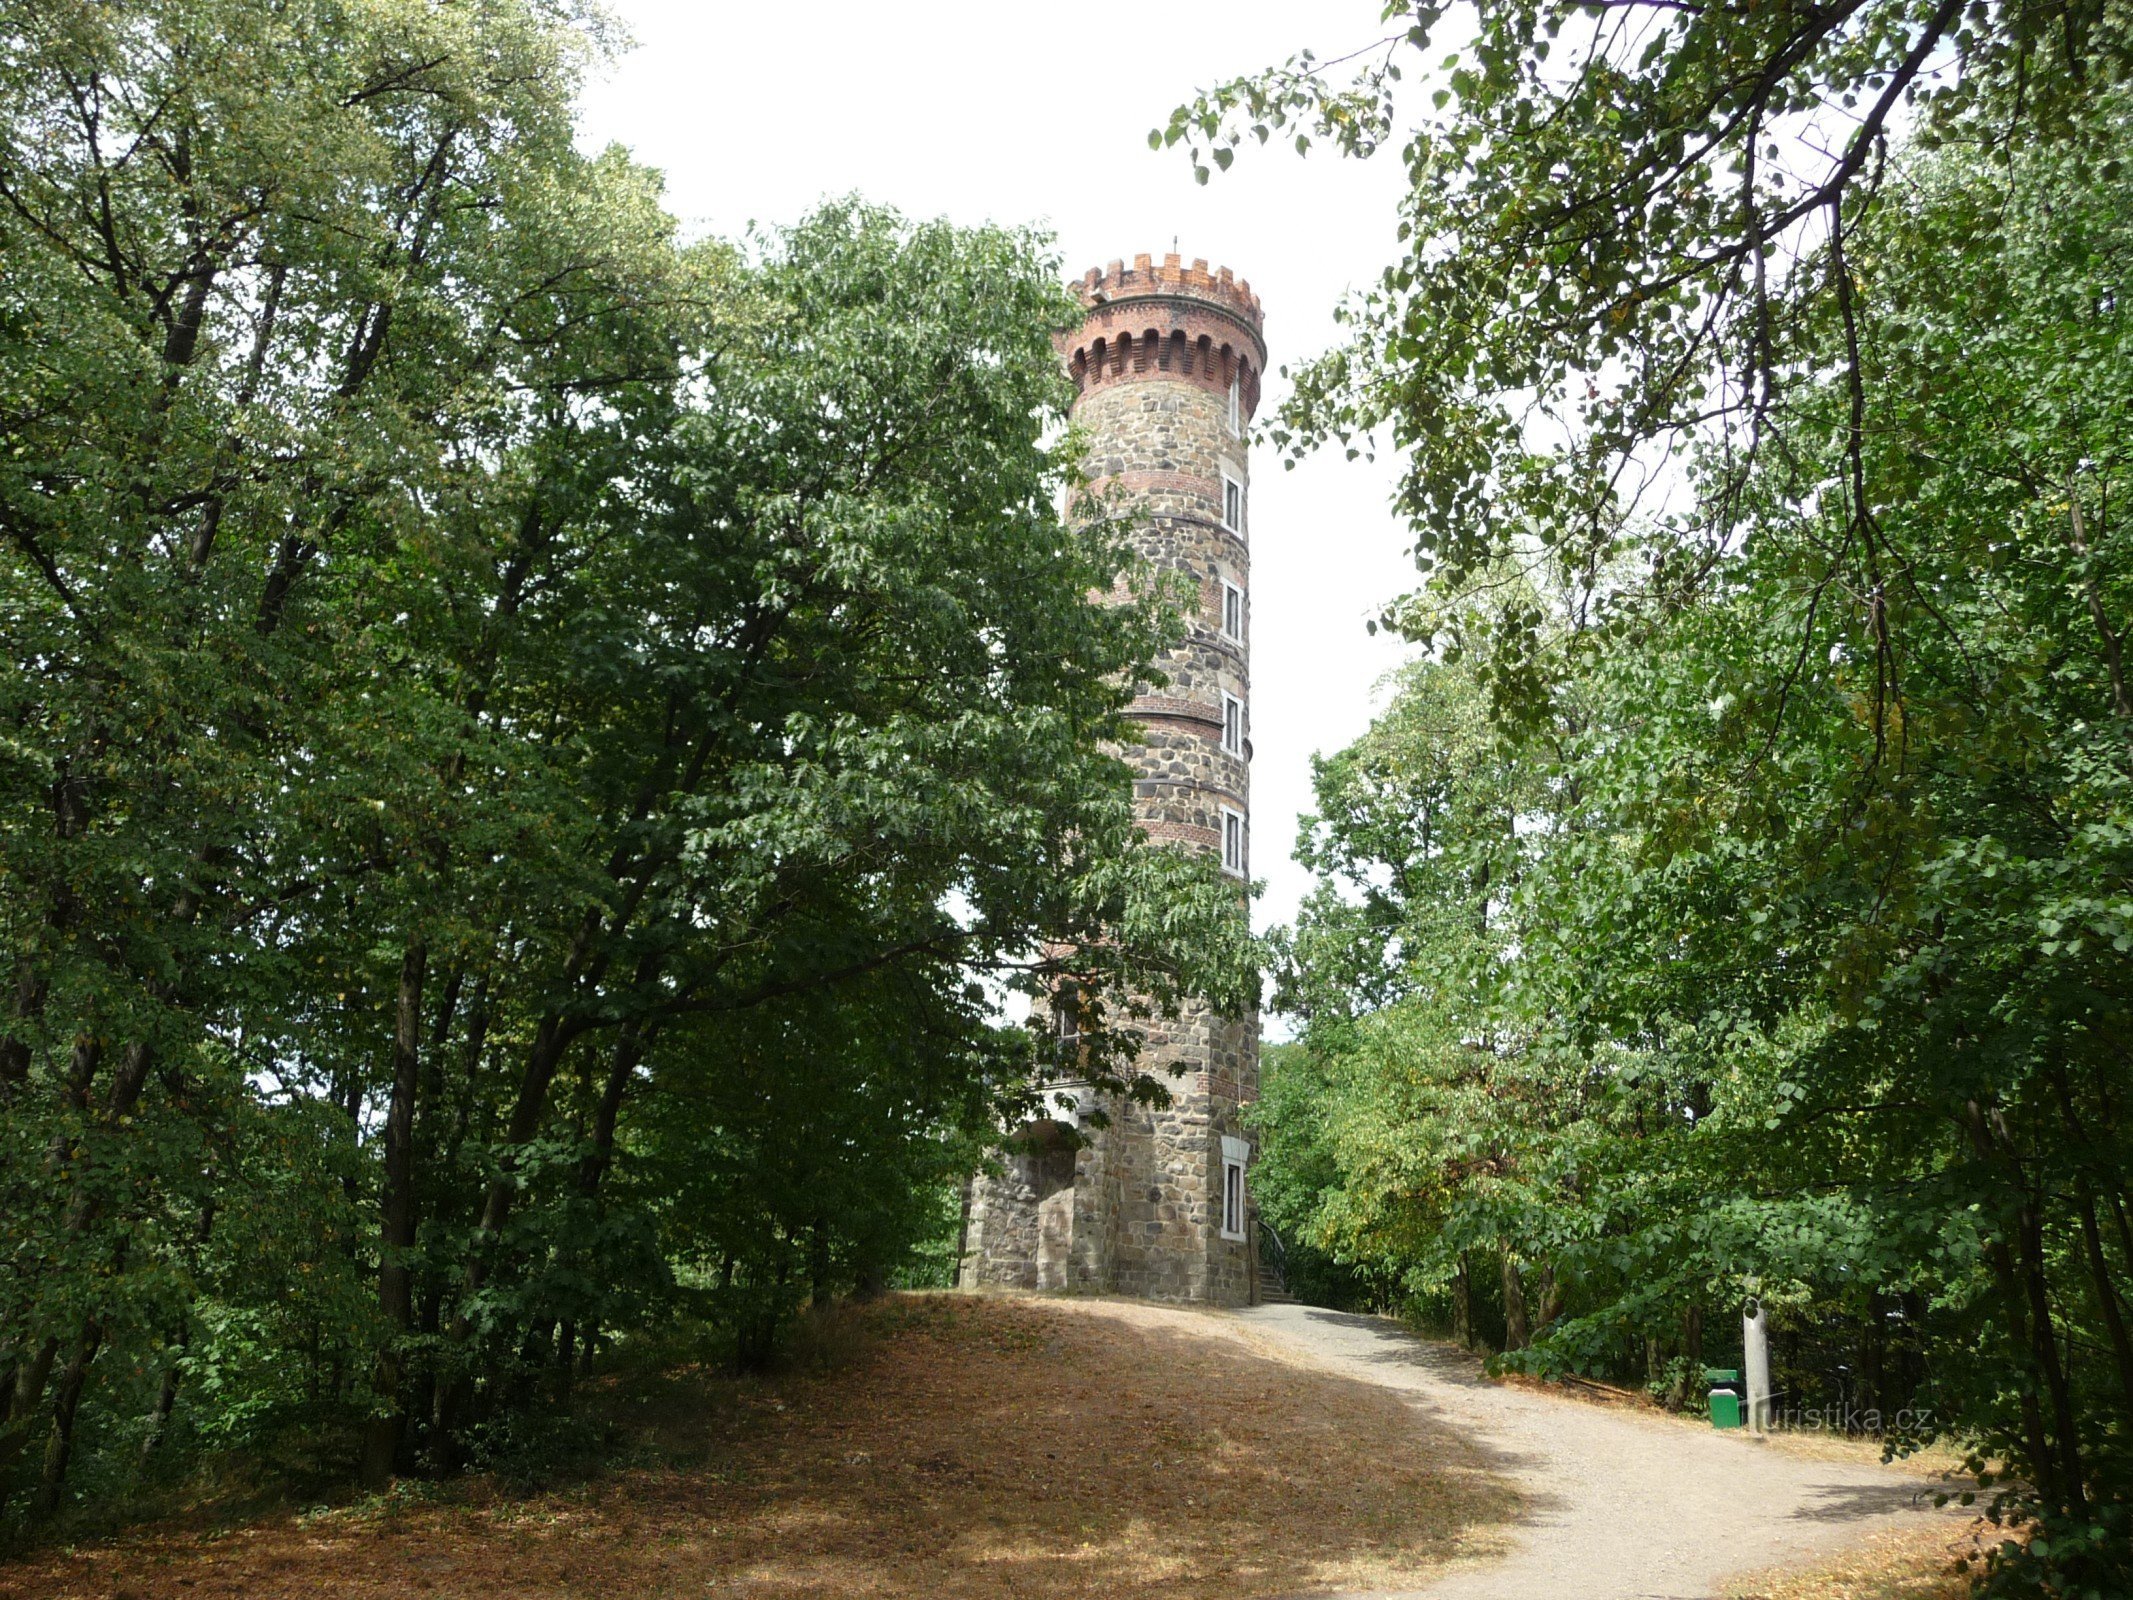 Cvilín - uitkijktoren in details van buiten, binnen en uitzicht